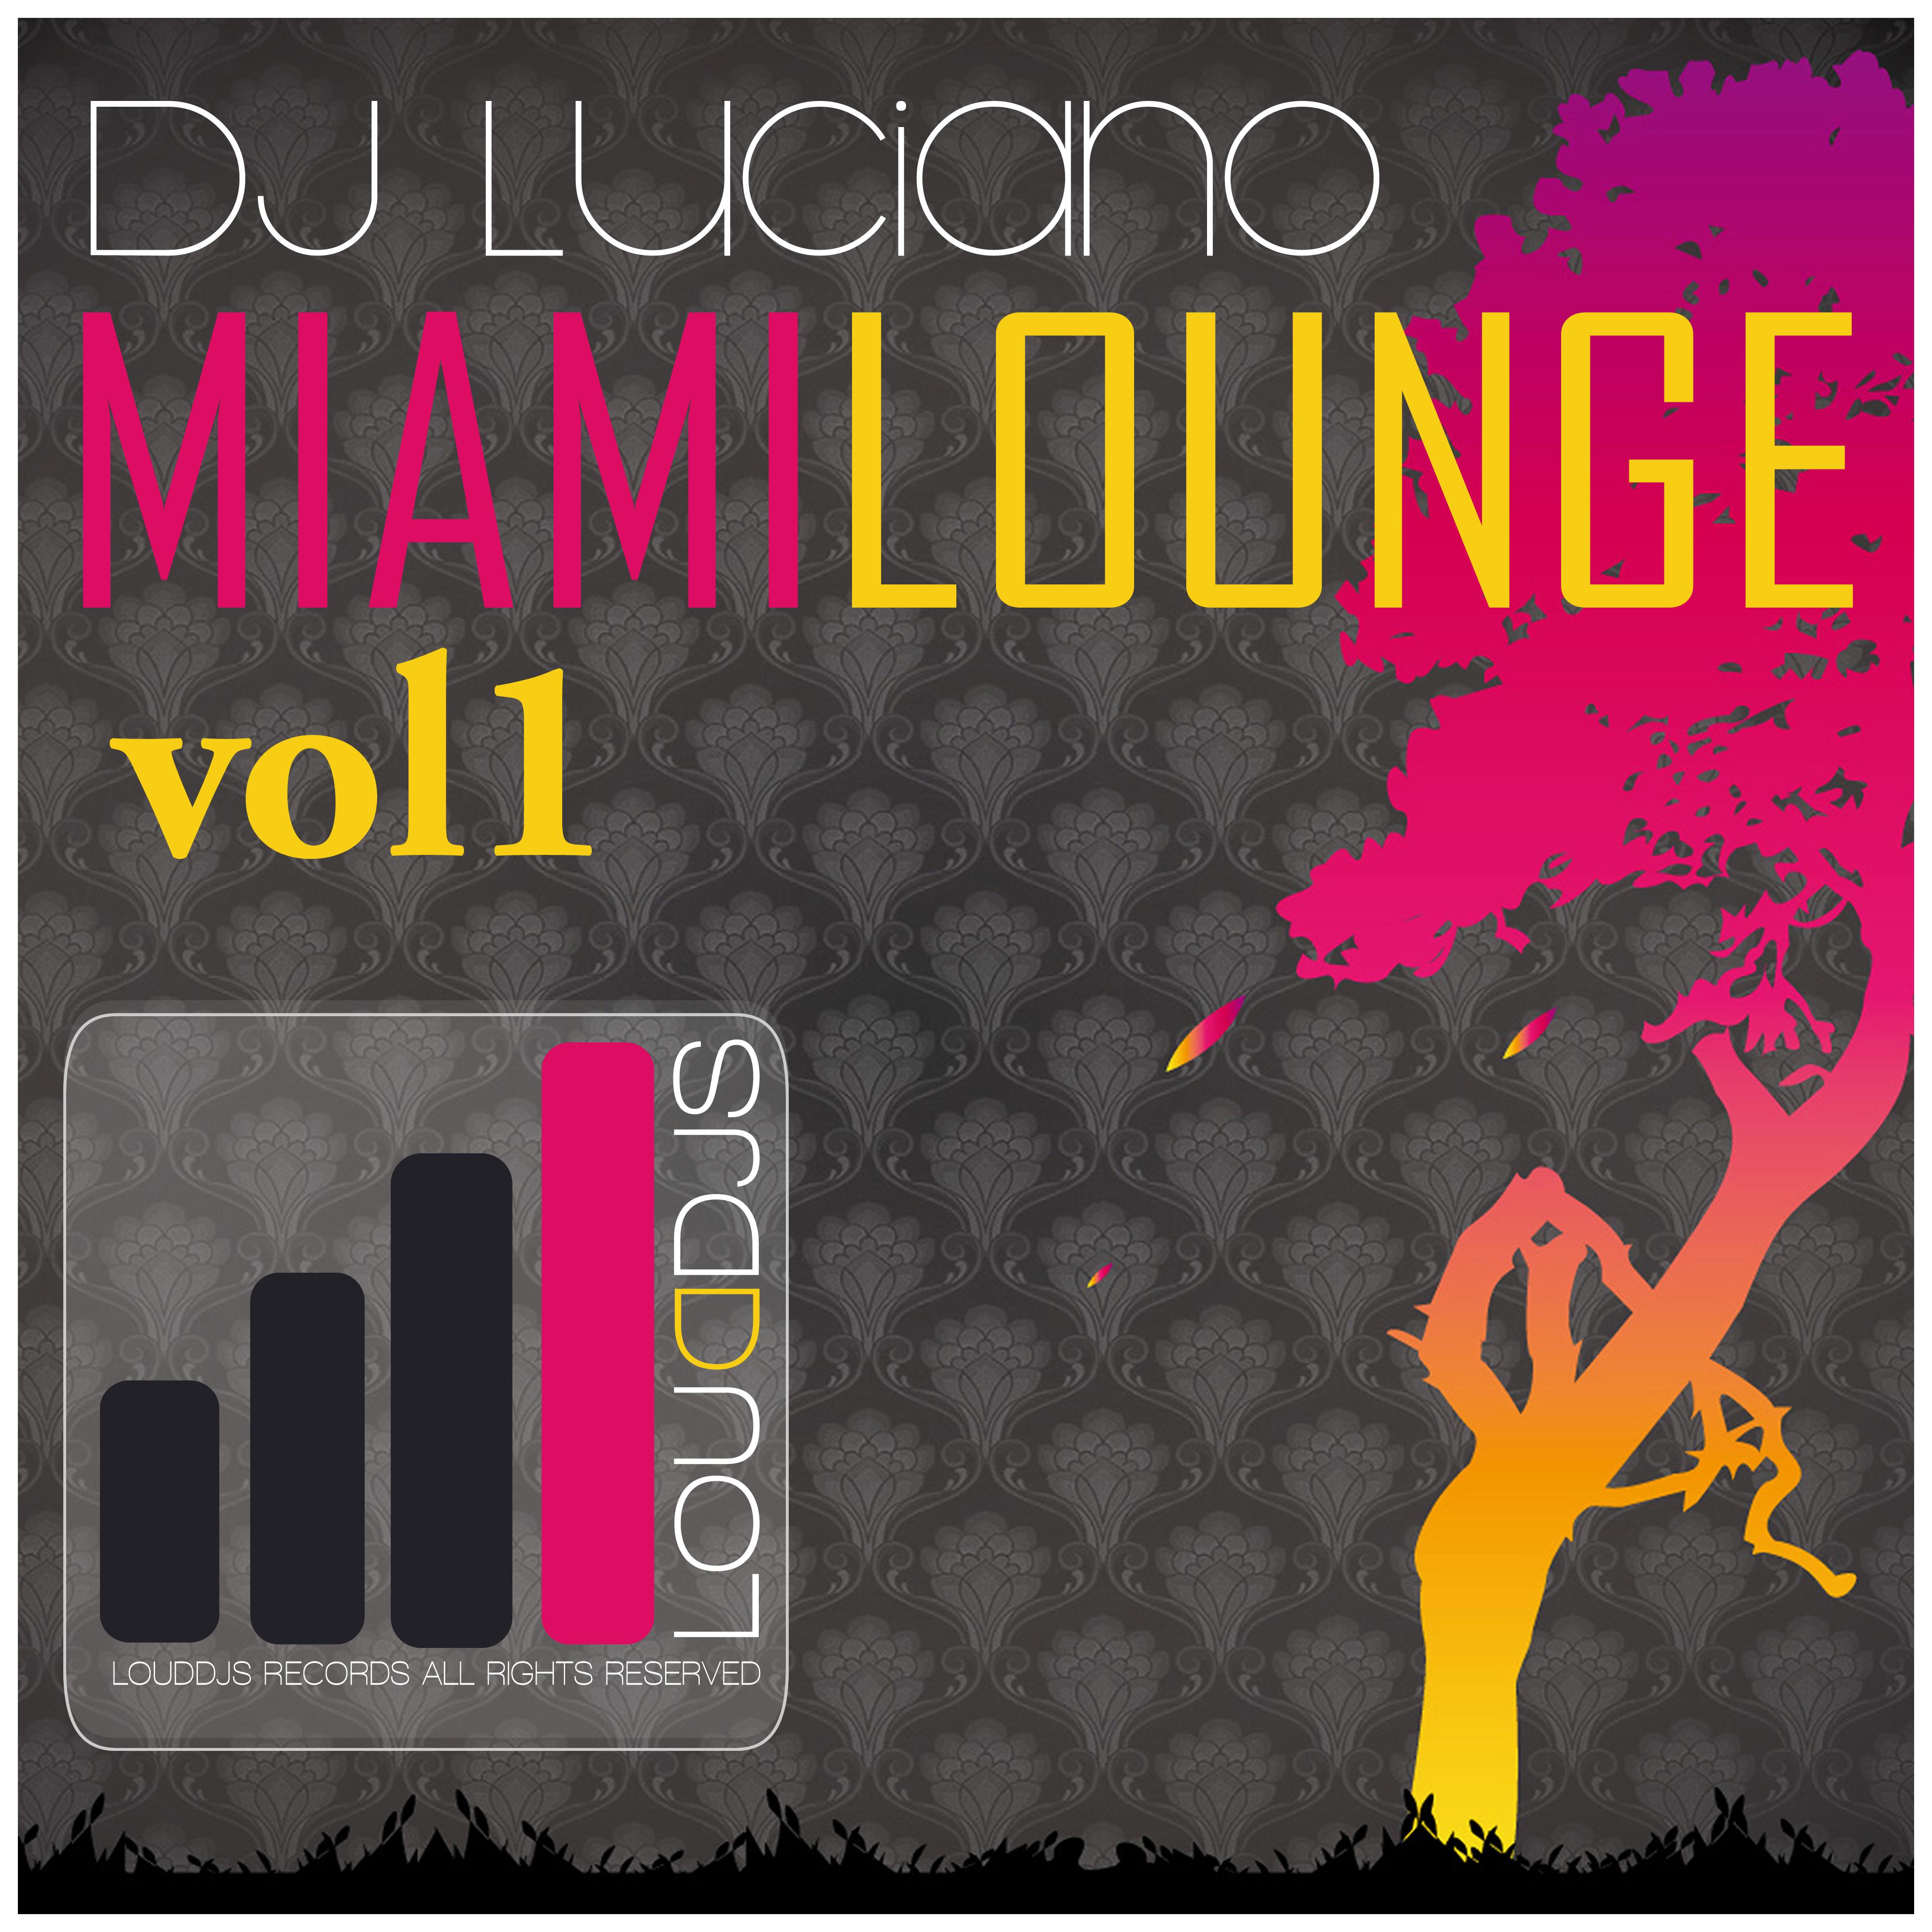 Miami Lounge, Vol. 1